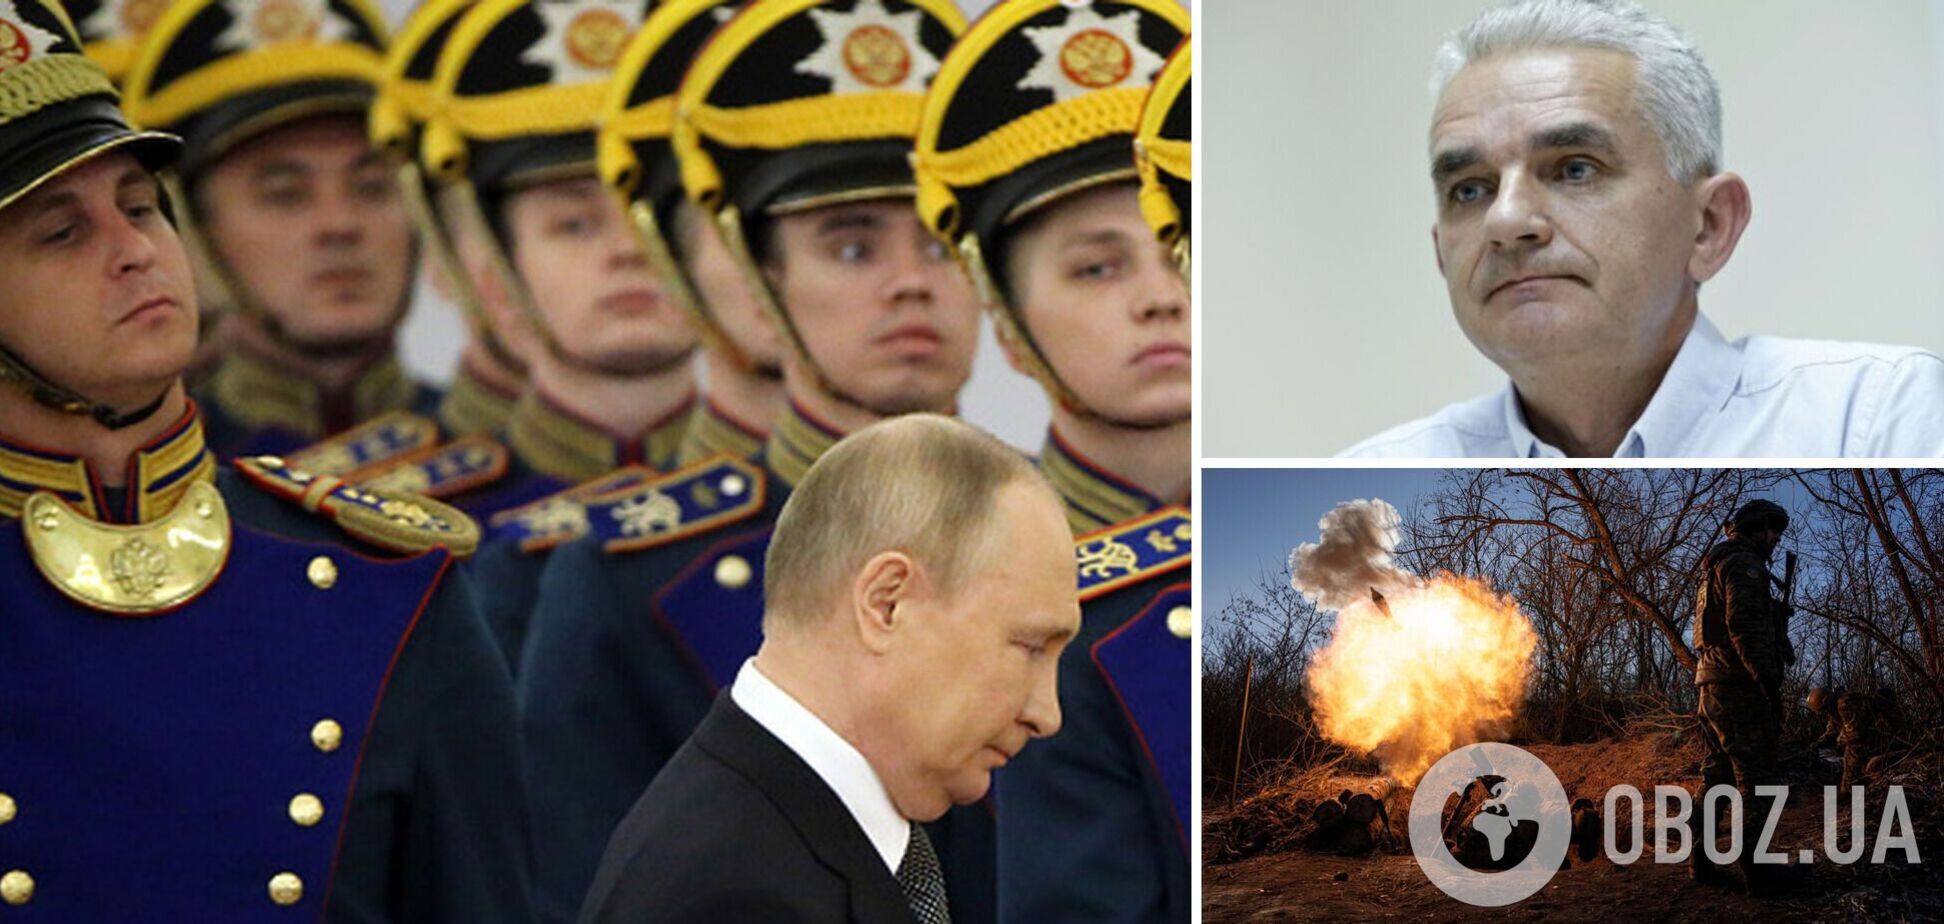 Мельник: Путин приостановил наступление, этому есть две причины. Интервью